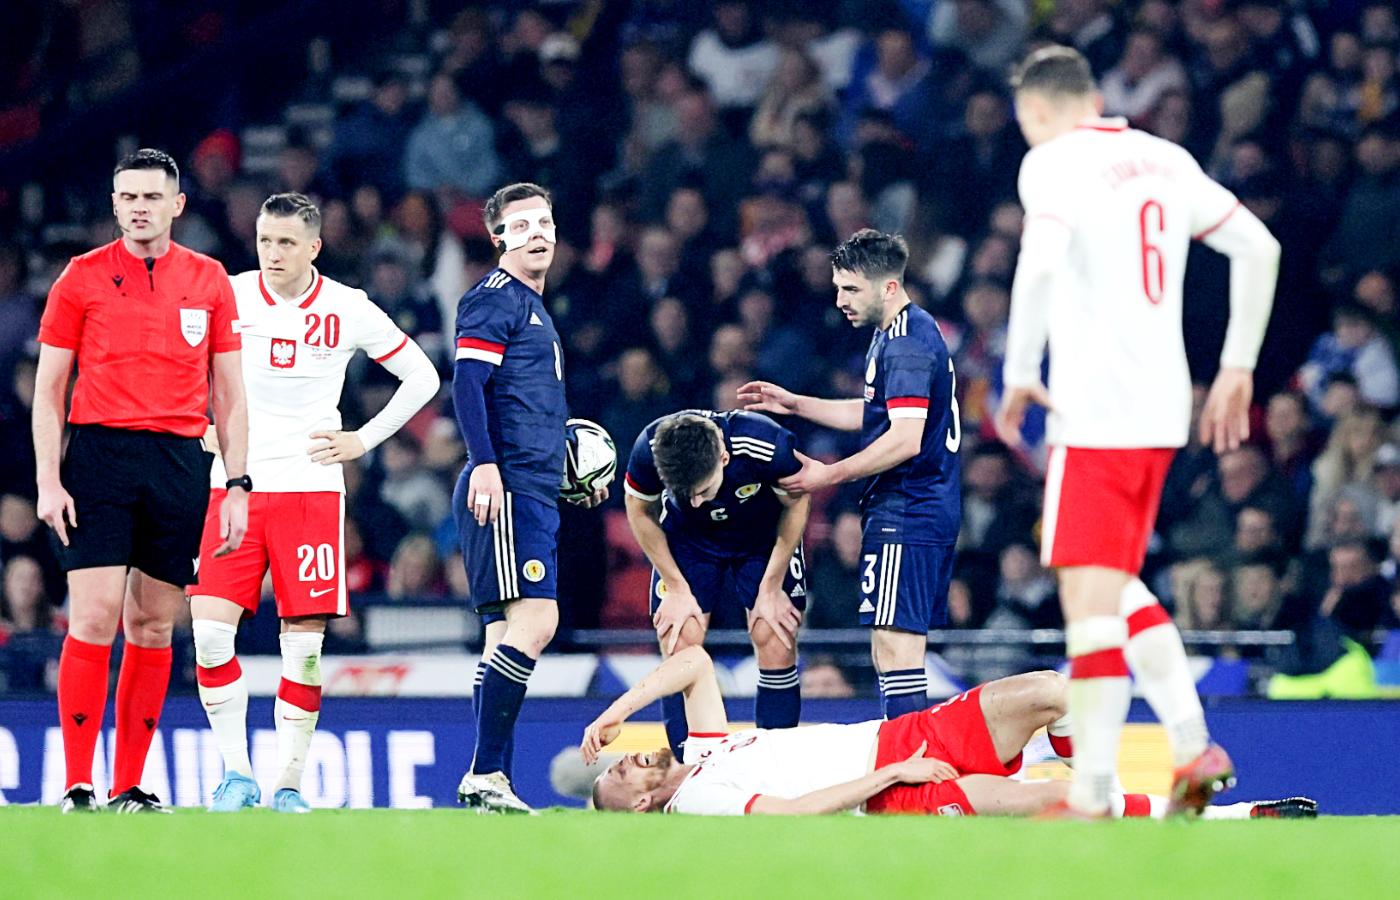 Polska szczęśliwie zremisowała w meczu towarzyskim ze Szkocją. To był bardzo słaby występ naszych piłkarzy w pierwszym meczu z Czesławem Michniewiczem w roli selekcjonera. 24 marca 2022 r.